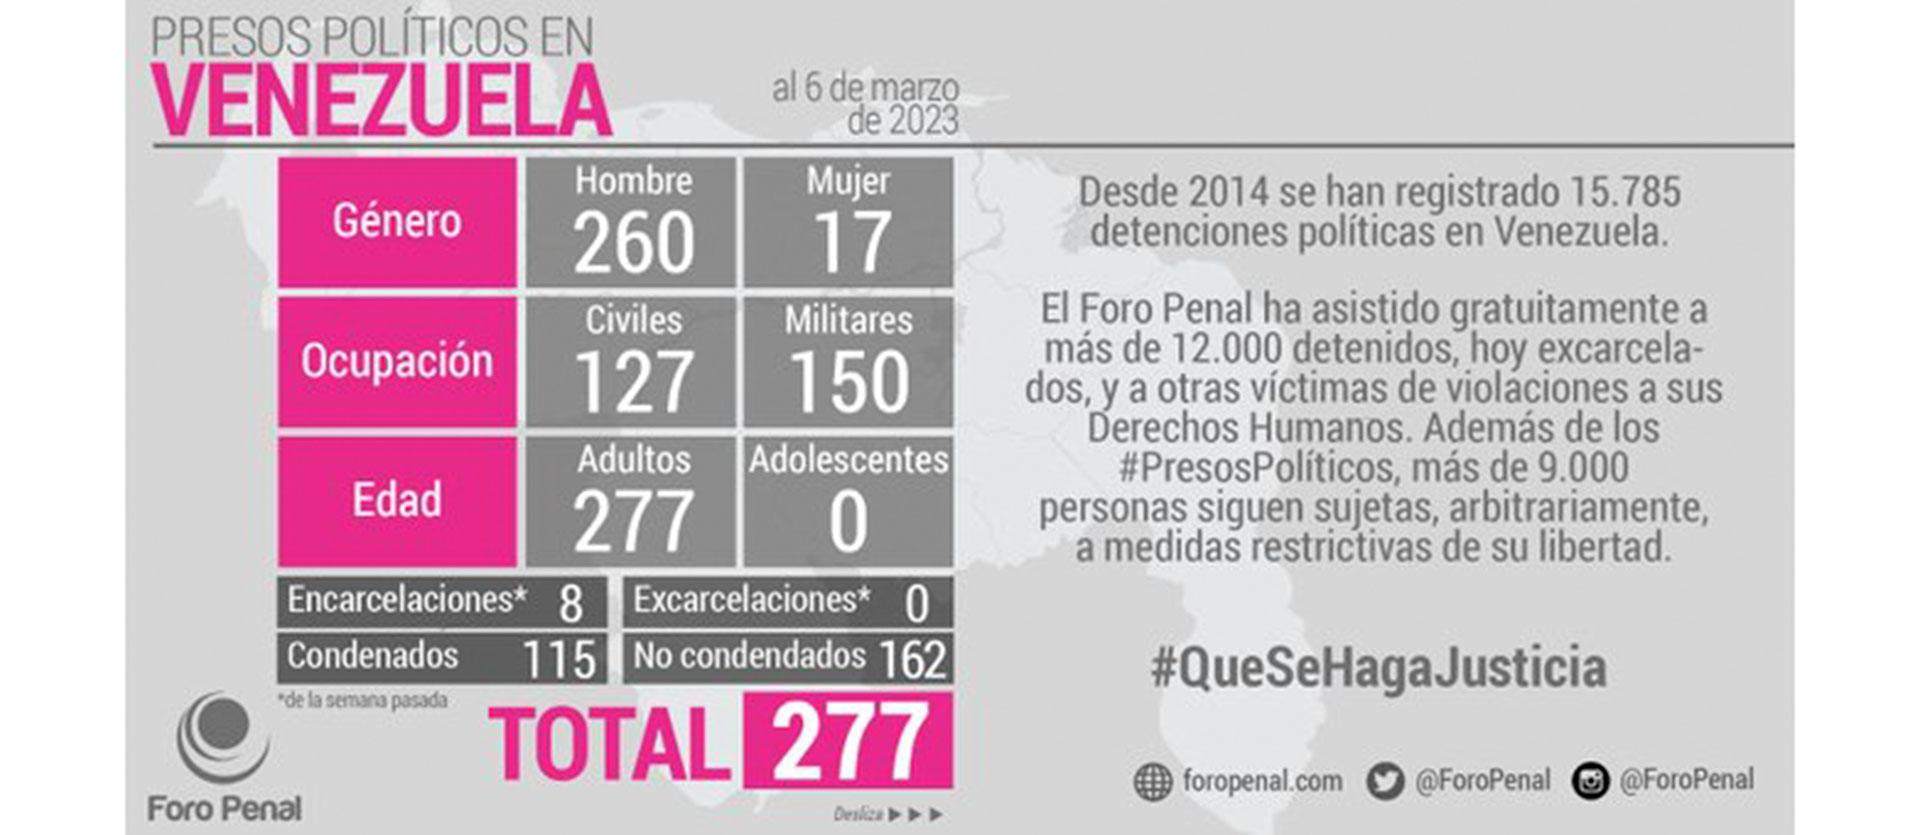 El detalle de la cantidad de presos políticos en Venezuela (Foro Penal)